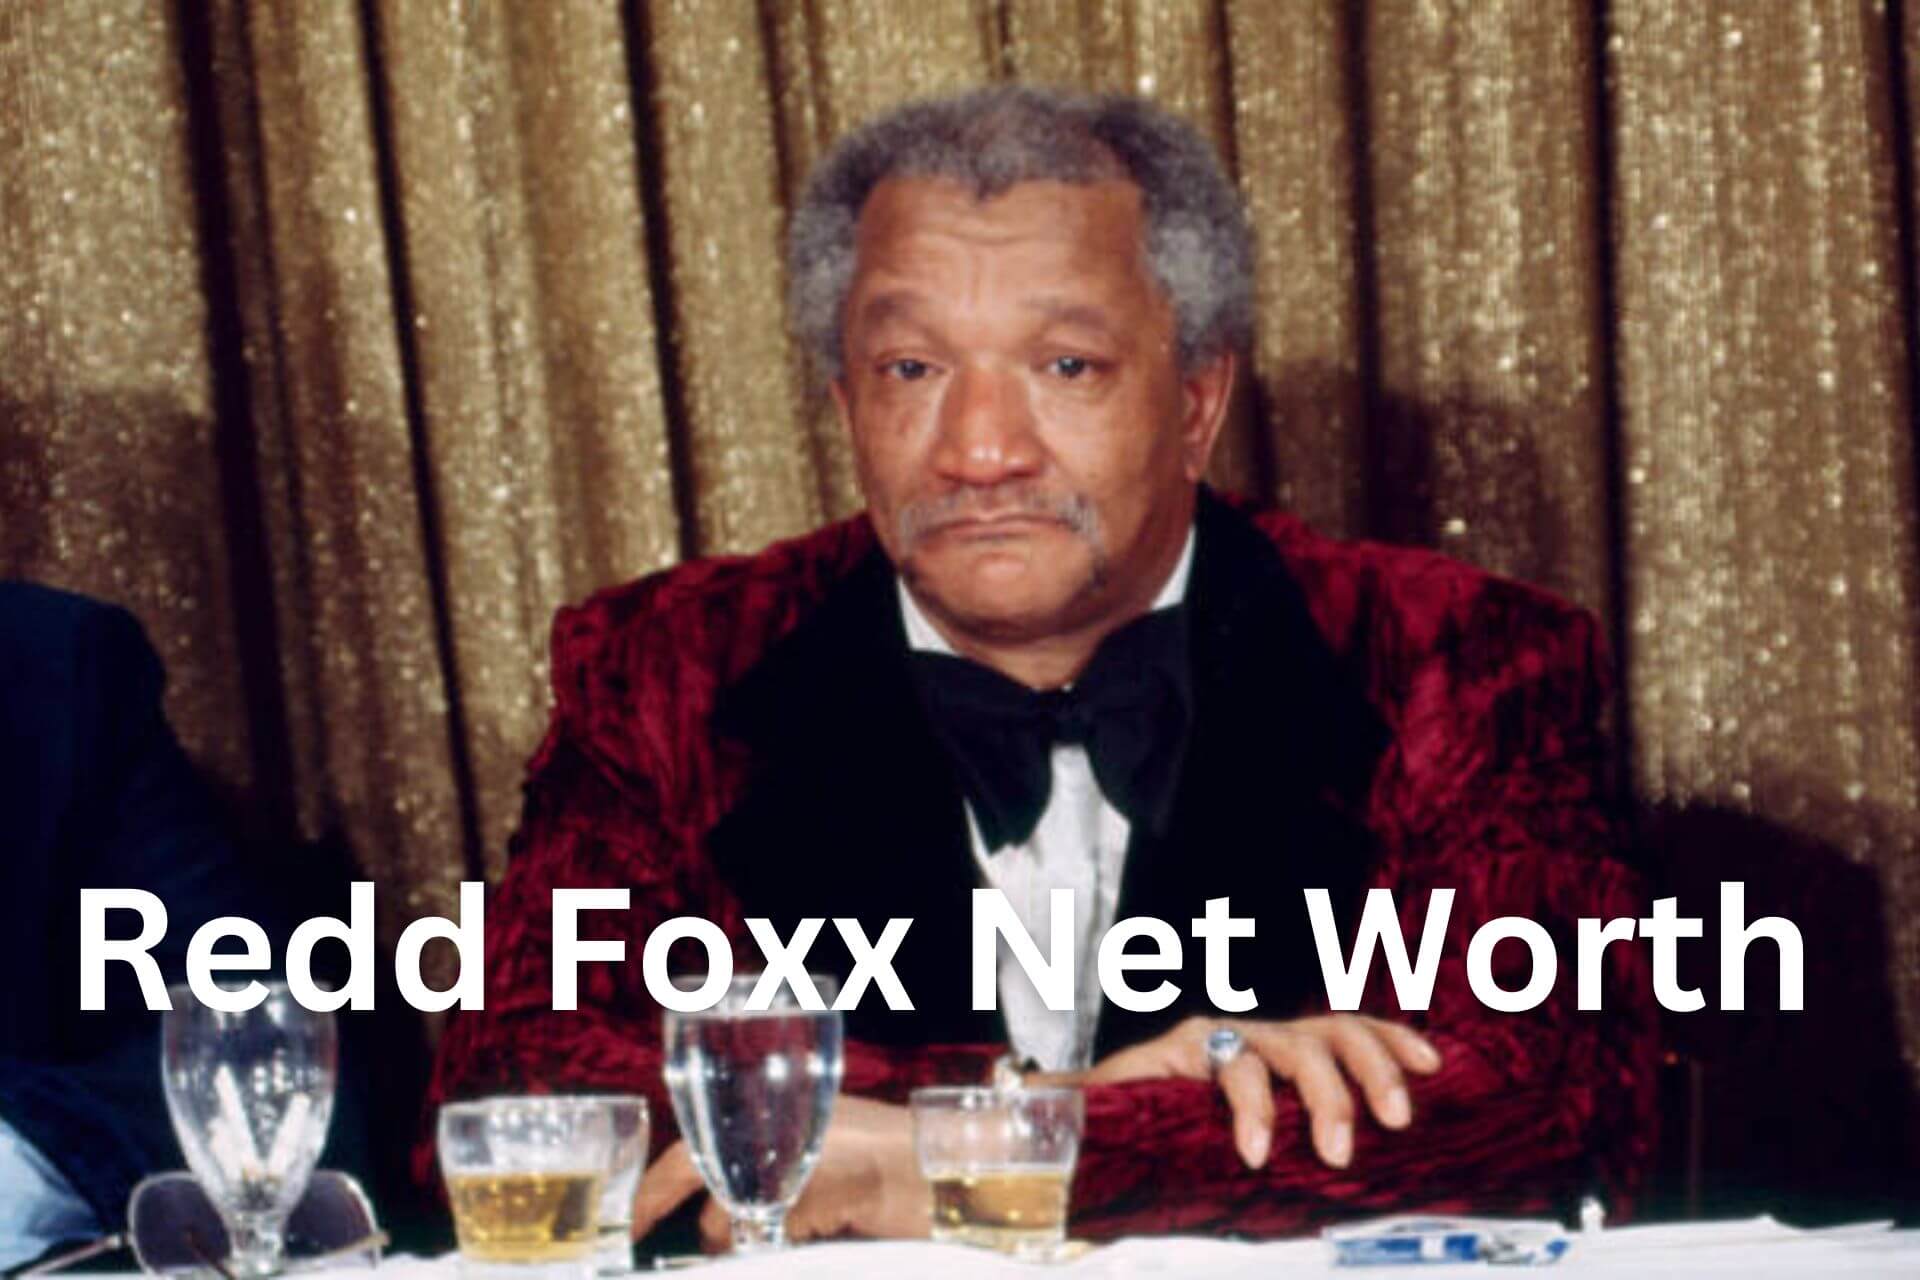 Redd Foxx Net Worth